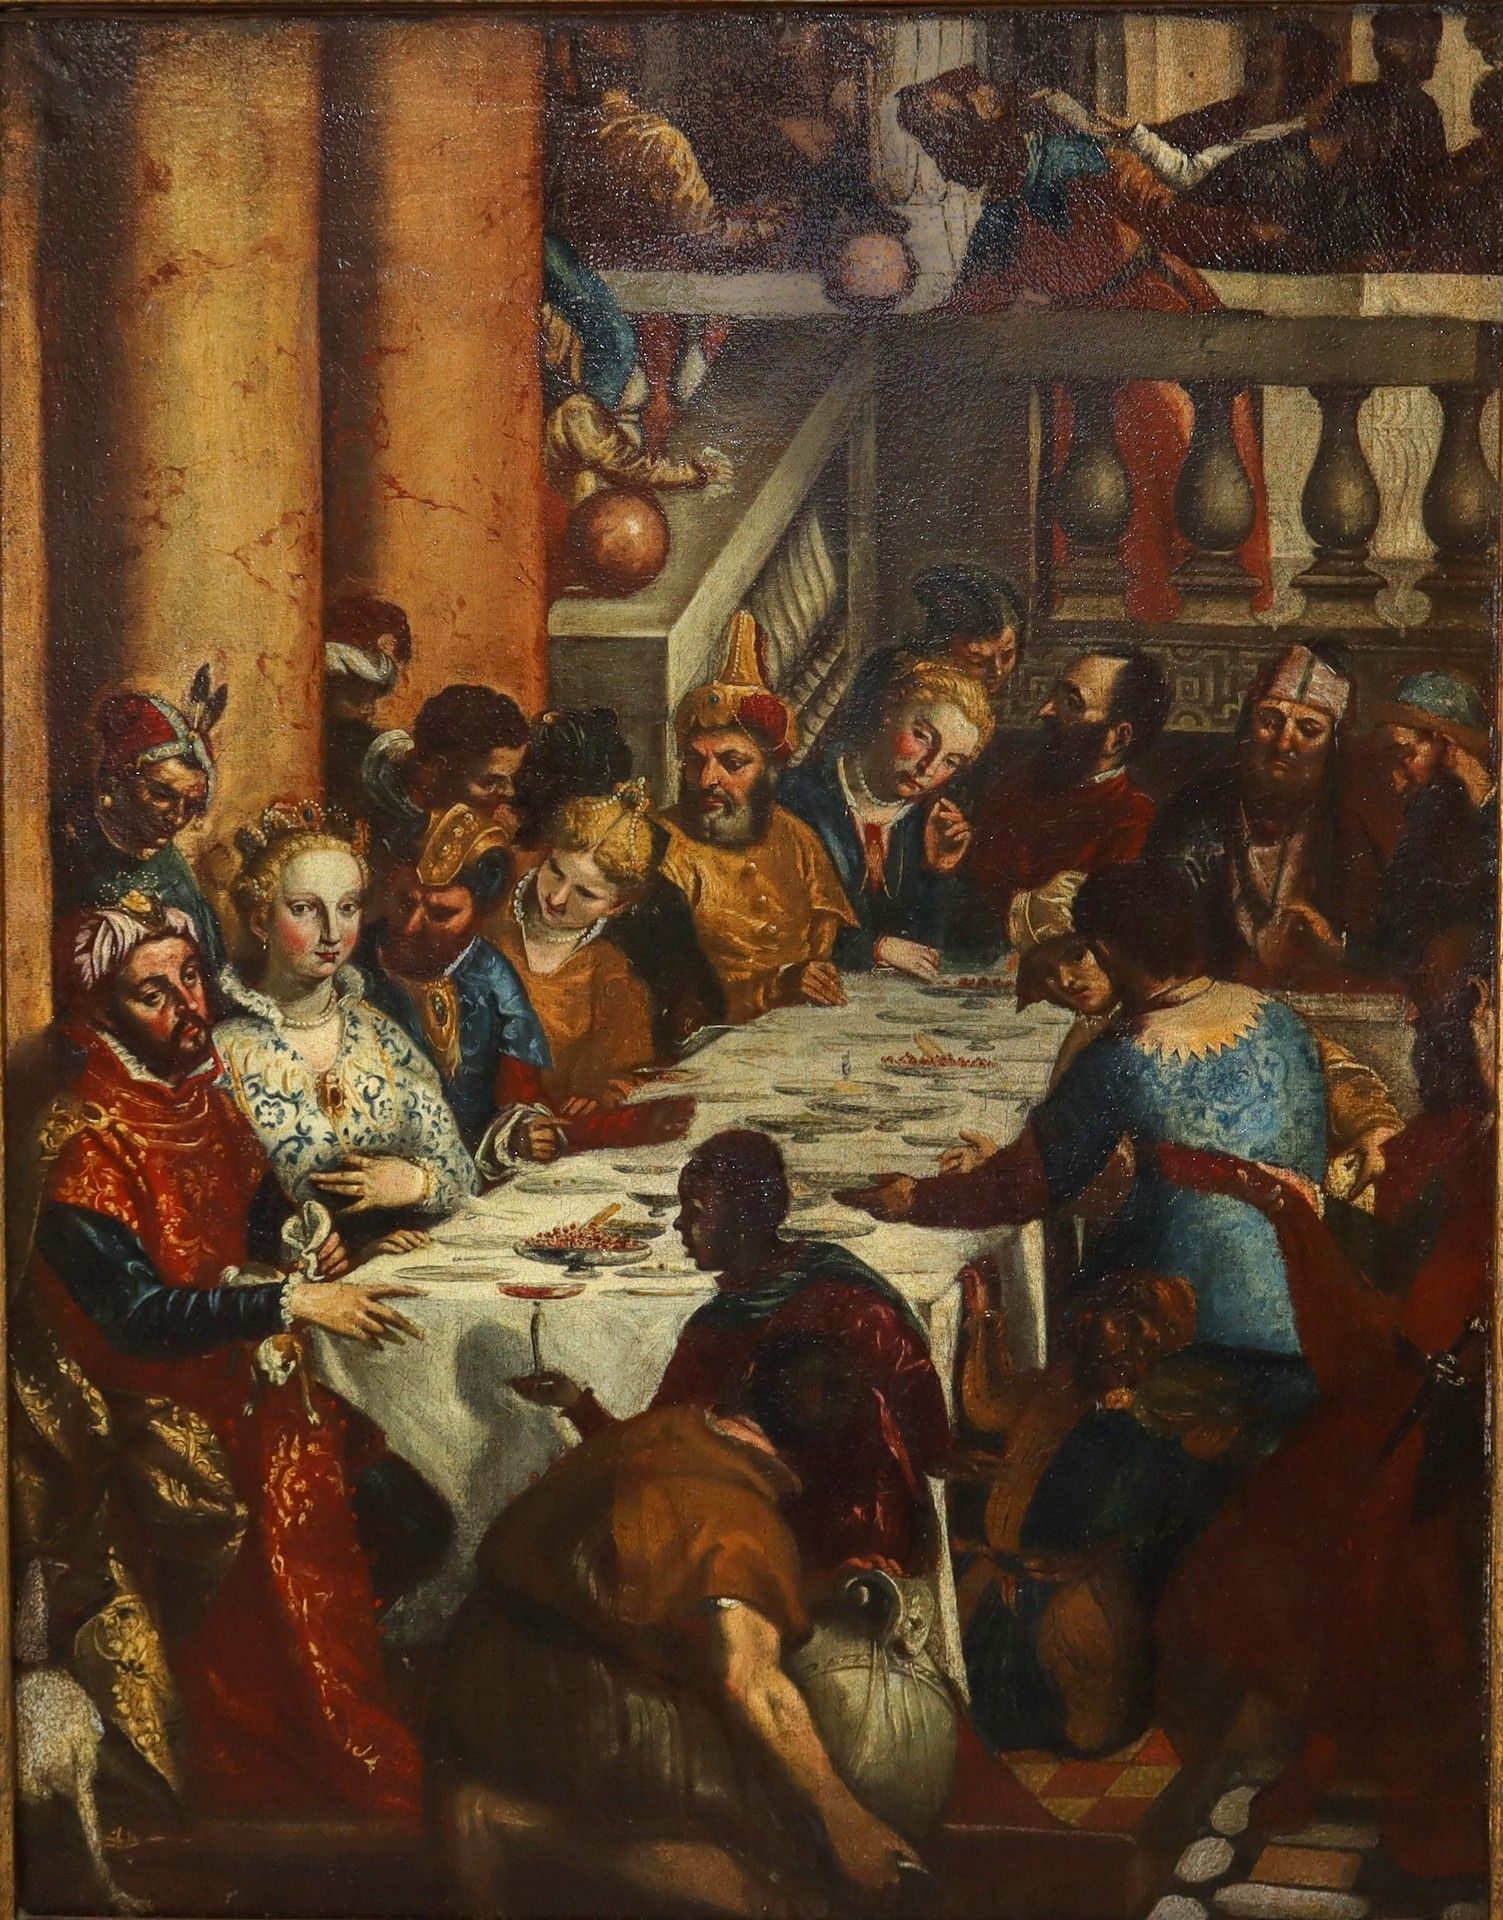 Null 欢聚的场景，18世纪末-19世纪初 cm 81x63, In frame 104x86 布面油画 复制自保罗-维罗内塞的名画《迦纳的婚礼》。左下部分的&hellip;